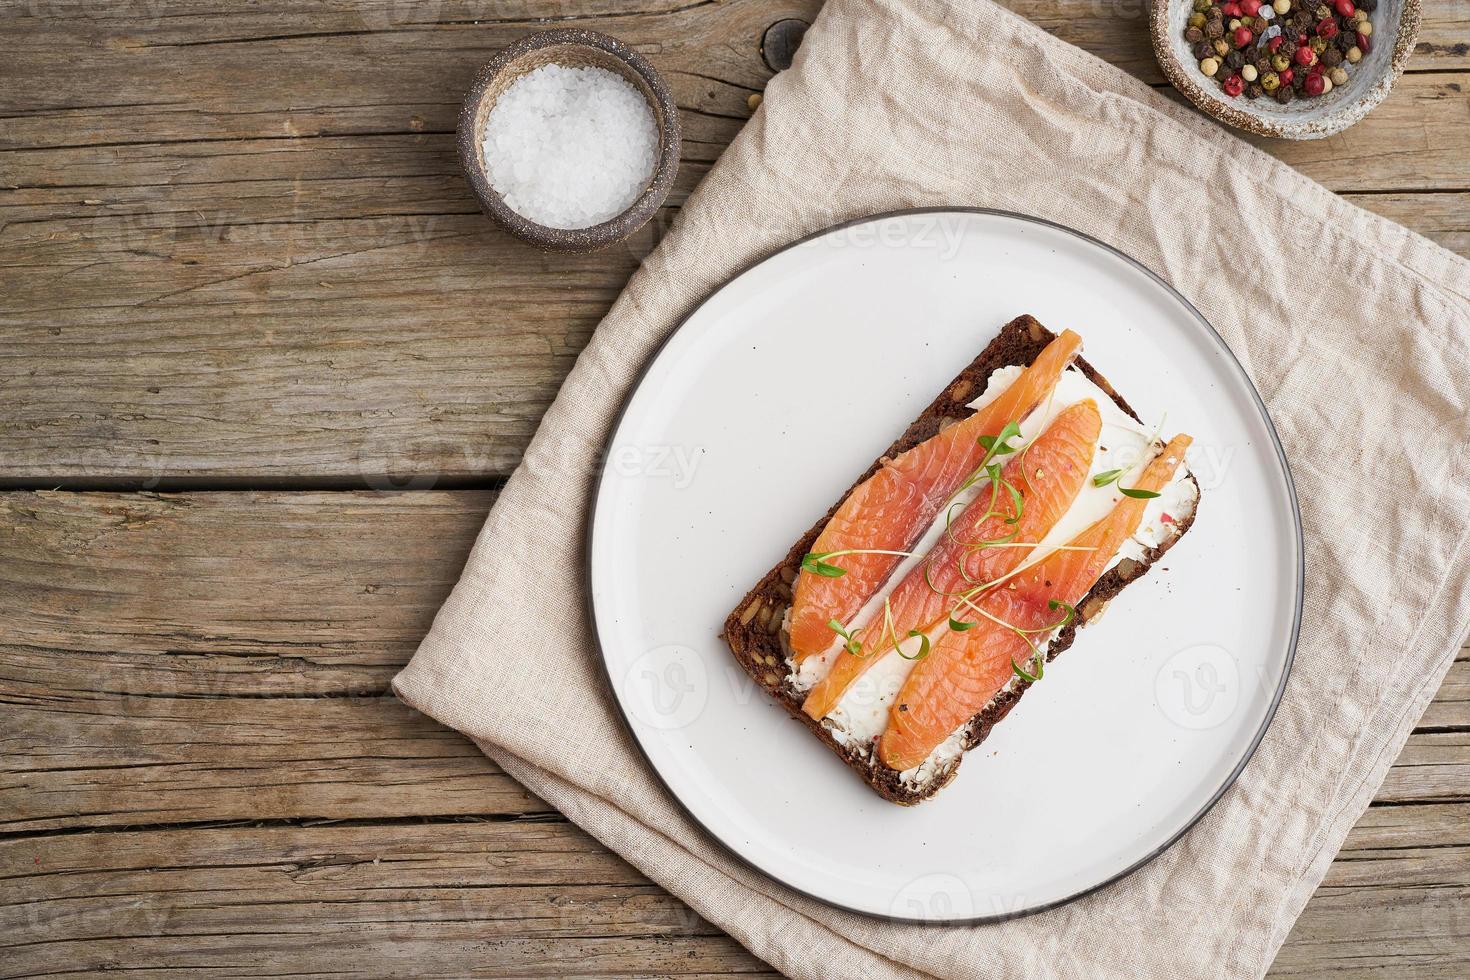 smorrebrod, sandwichs danois ouverts. pain de seigle noir au saumon photo